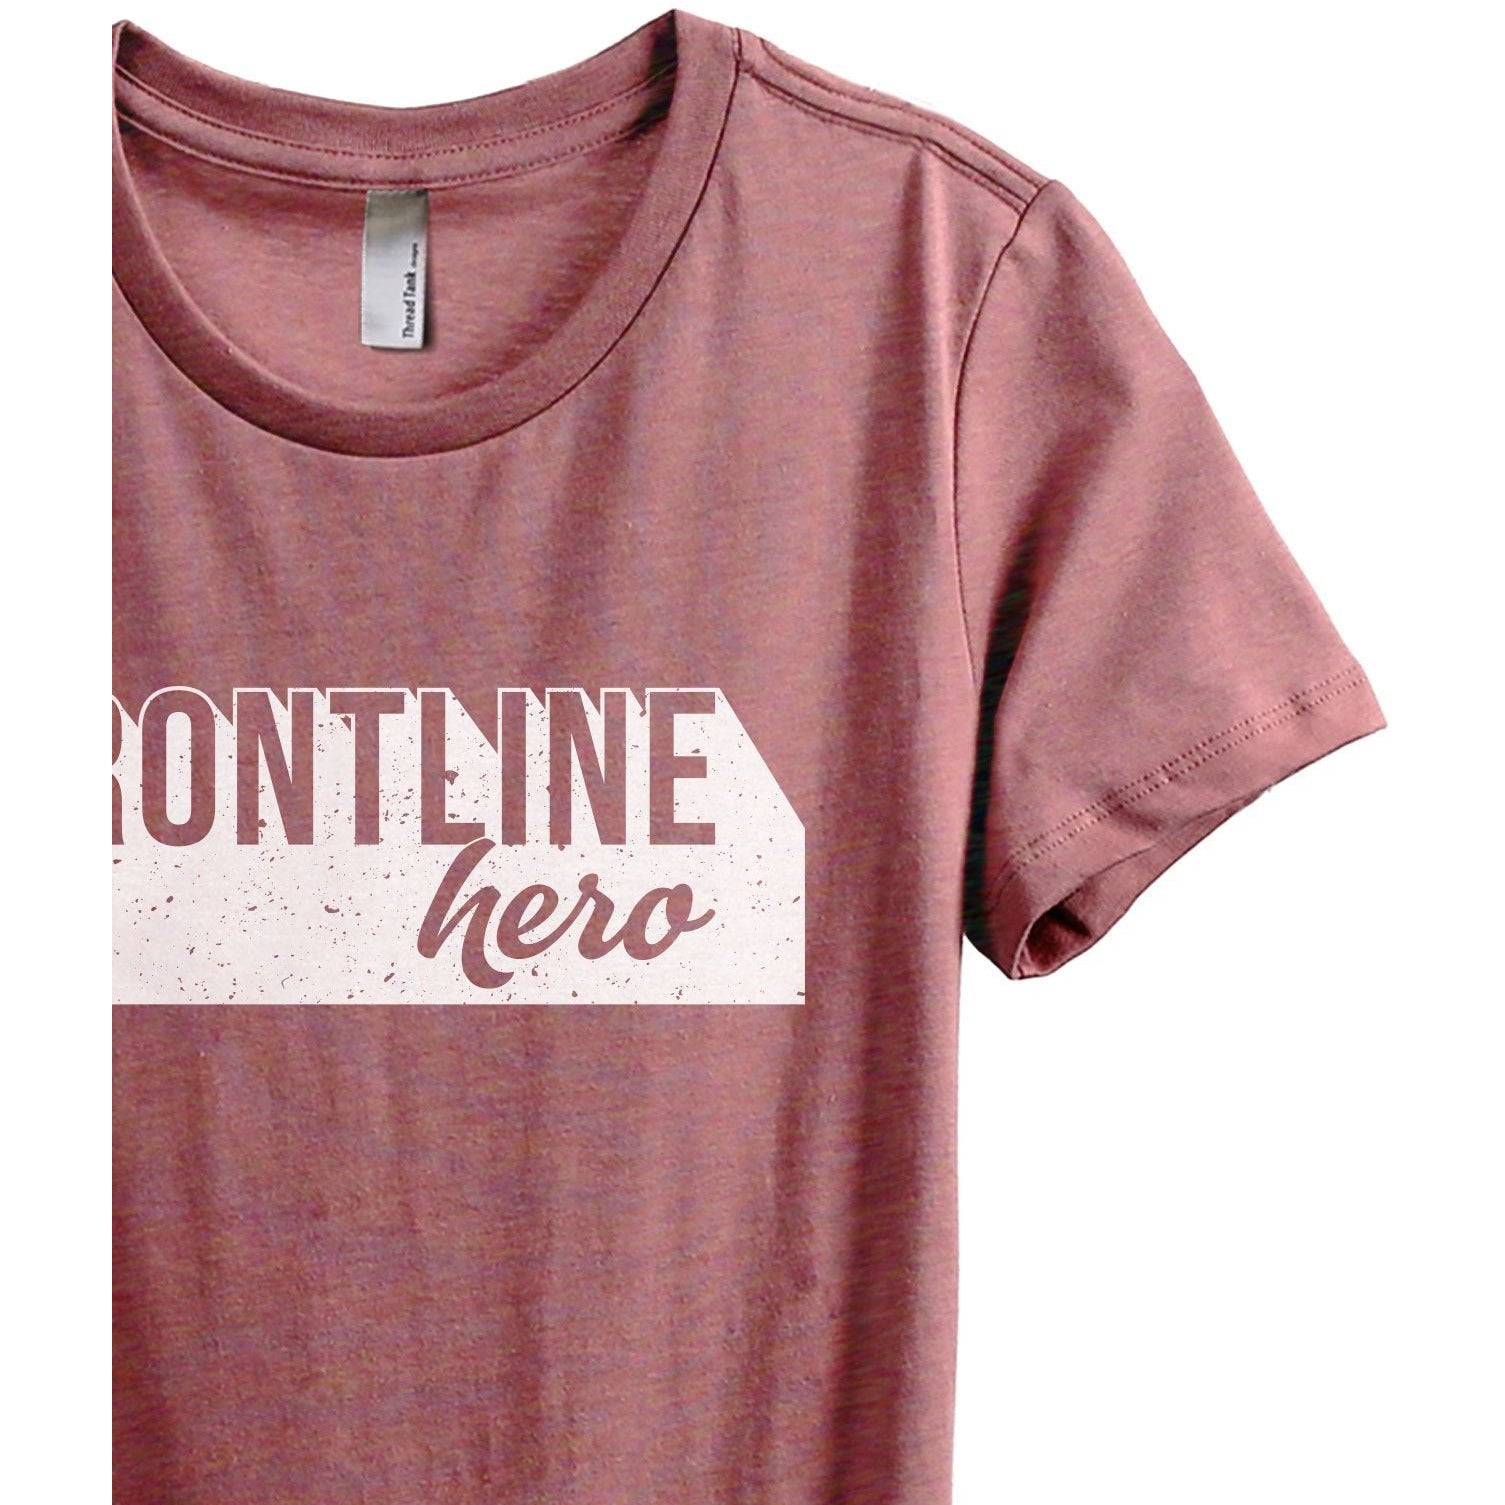 Frontline Hero Women's Relaxed Crewneck T-Shirt Top Tee Heather Rouge Zoom Details
